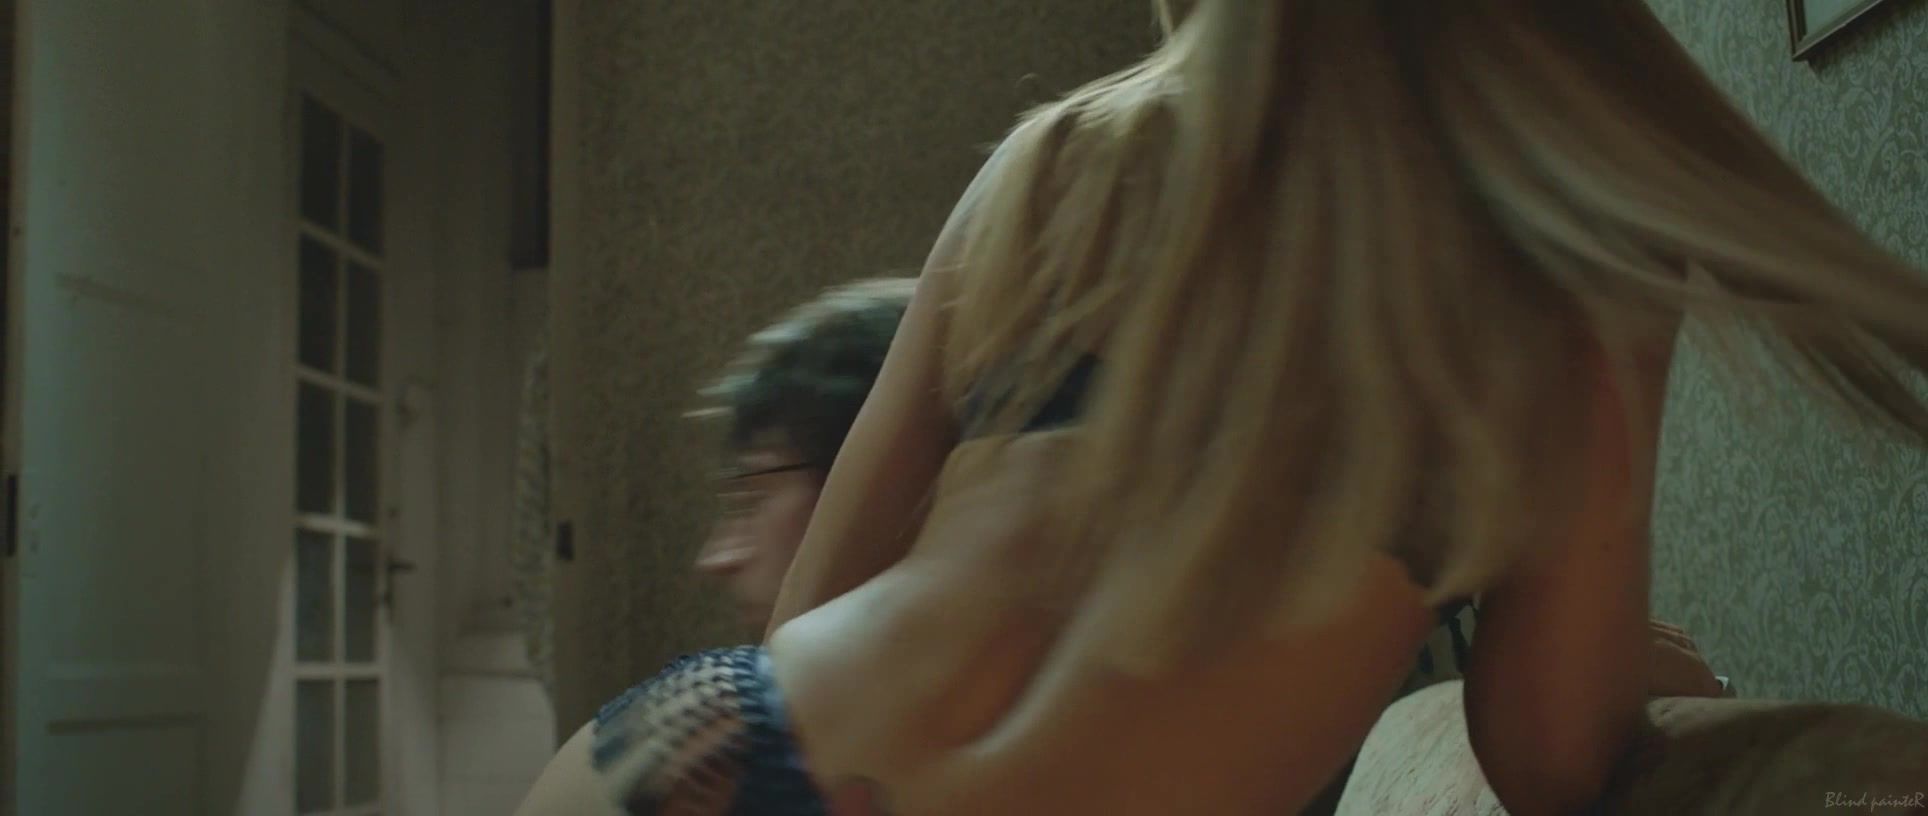 Wet Sex video Sabrina Sato nude - O Concurso (2013) Esposa